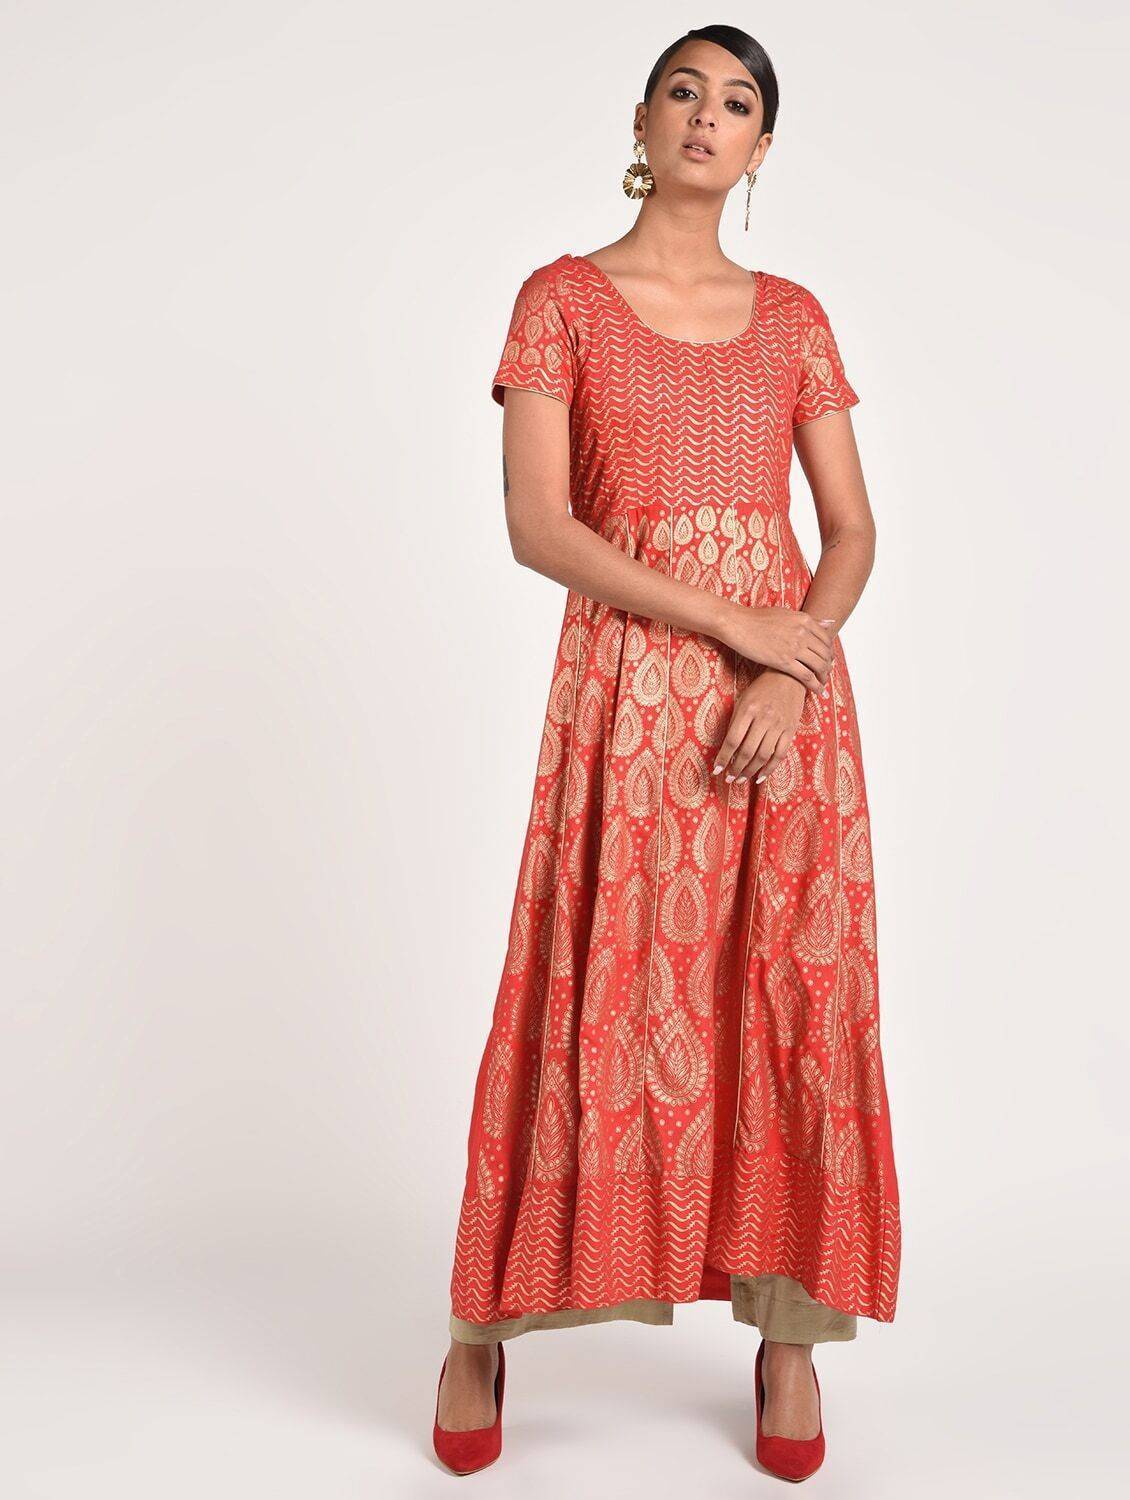 Women's Red Rayon Fancy Full Ghera Party Wear Anarkali Kurta Only - Final Clearance Sale